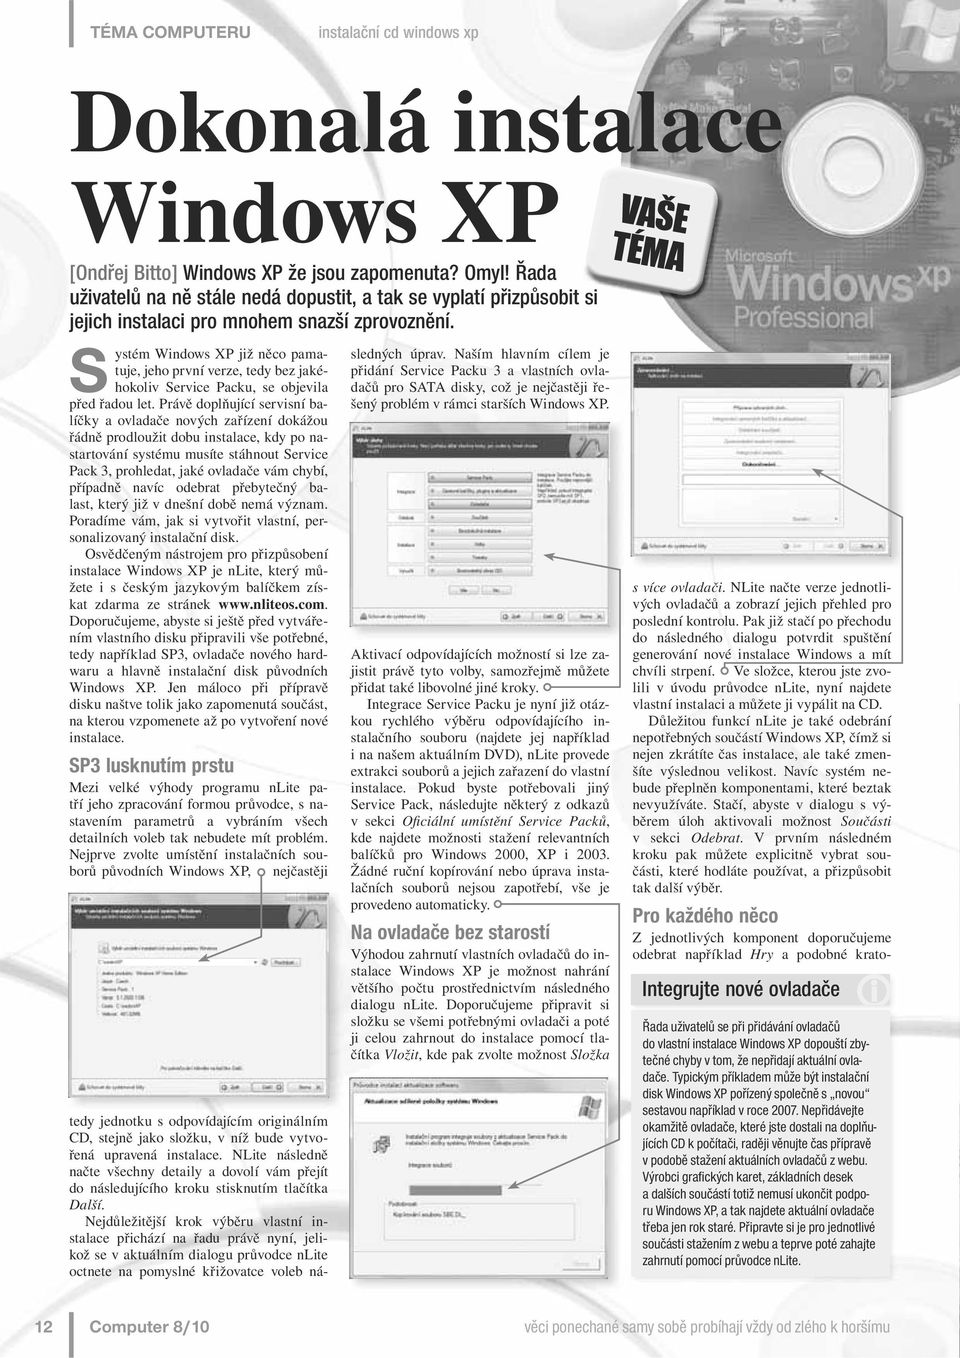 Systém Windows XP již něco pamatuje, jeho první verze, tedy bez jakéhokoliv Service Packu, se objevila před řadou let.